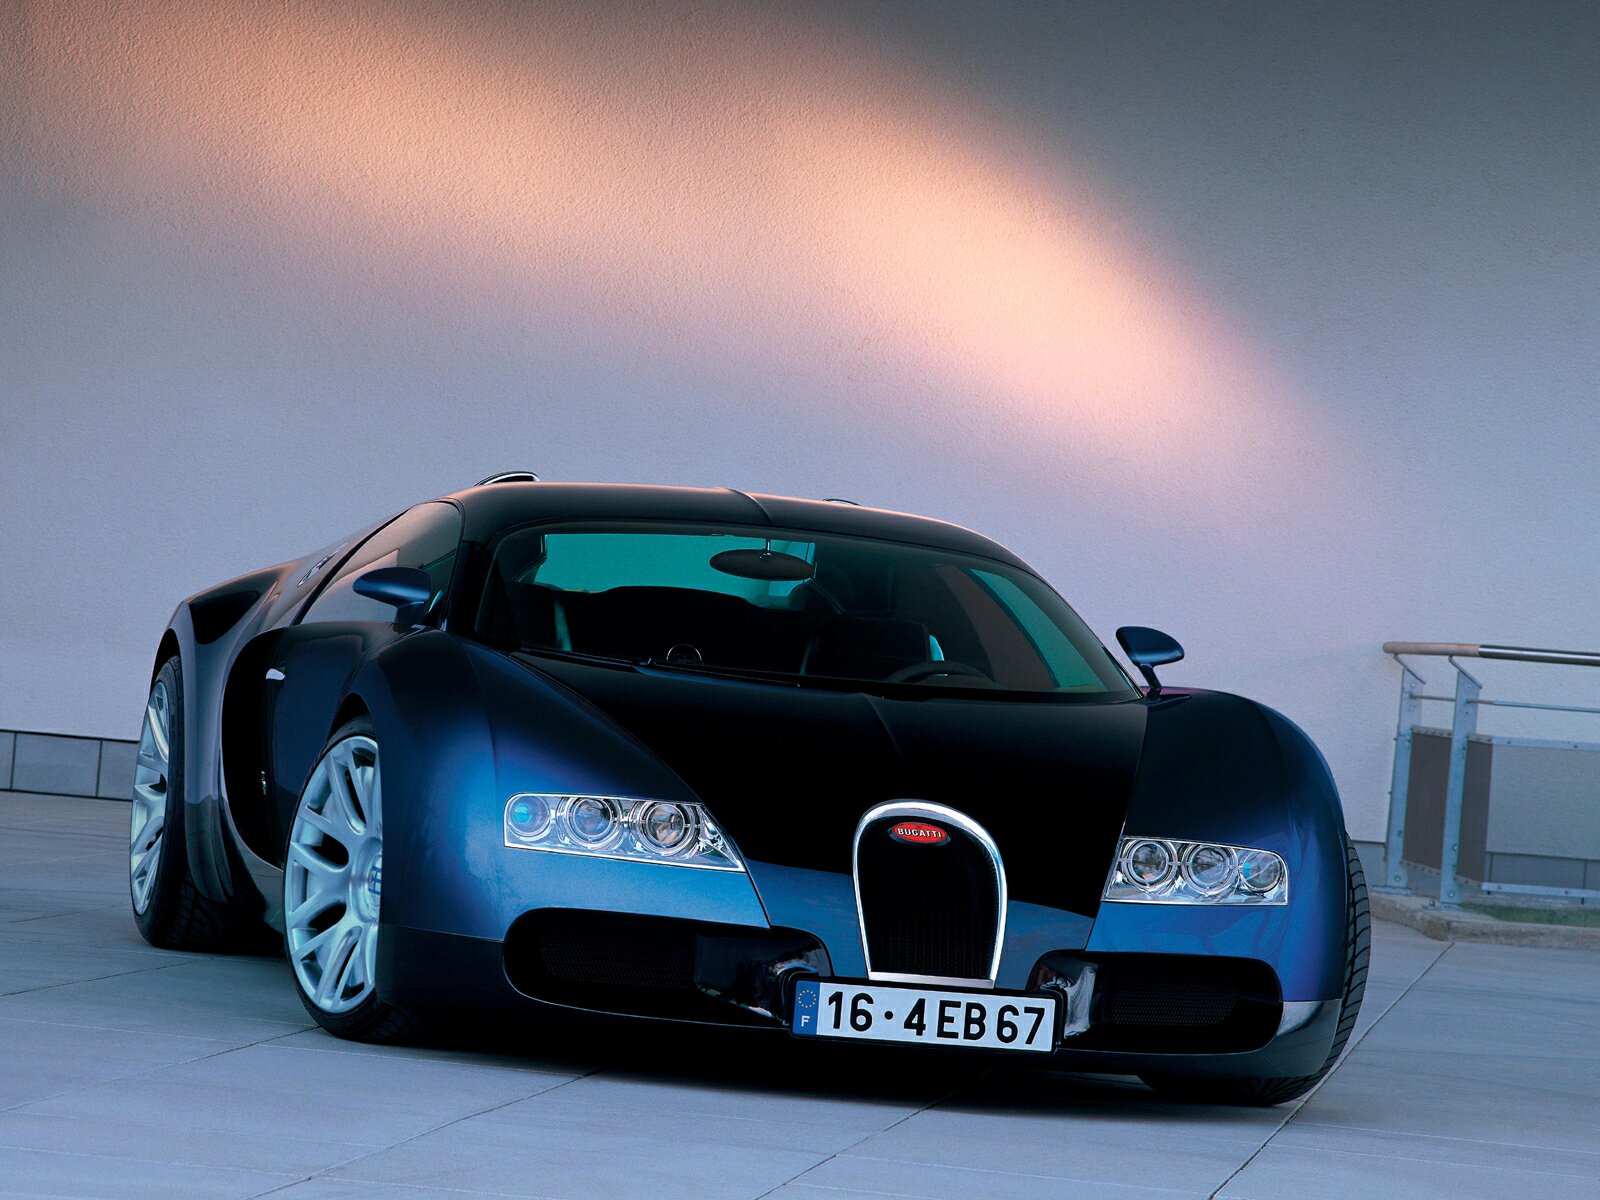 https://blogger.googleusercontent.com/img/b/R29vZ2xl/AVvXsEhinSg9ygk8K2msqL8MIm1RKLErFEwNwA7aUKuuik2XhIpwpVPPtS4zxz6NZLuu6XHJ0L4YYFUChYTRerijuv2CjDPXomsHJgfMLvsLFg_nO8ANboCh4iG7hb3GRi0eb-YERfa3dnAJEMY/s1600/Bugatti-Veyron-017.jpg